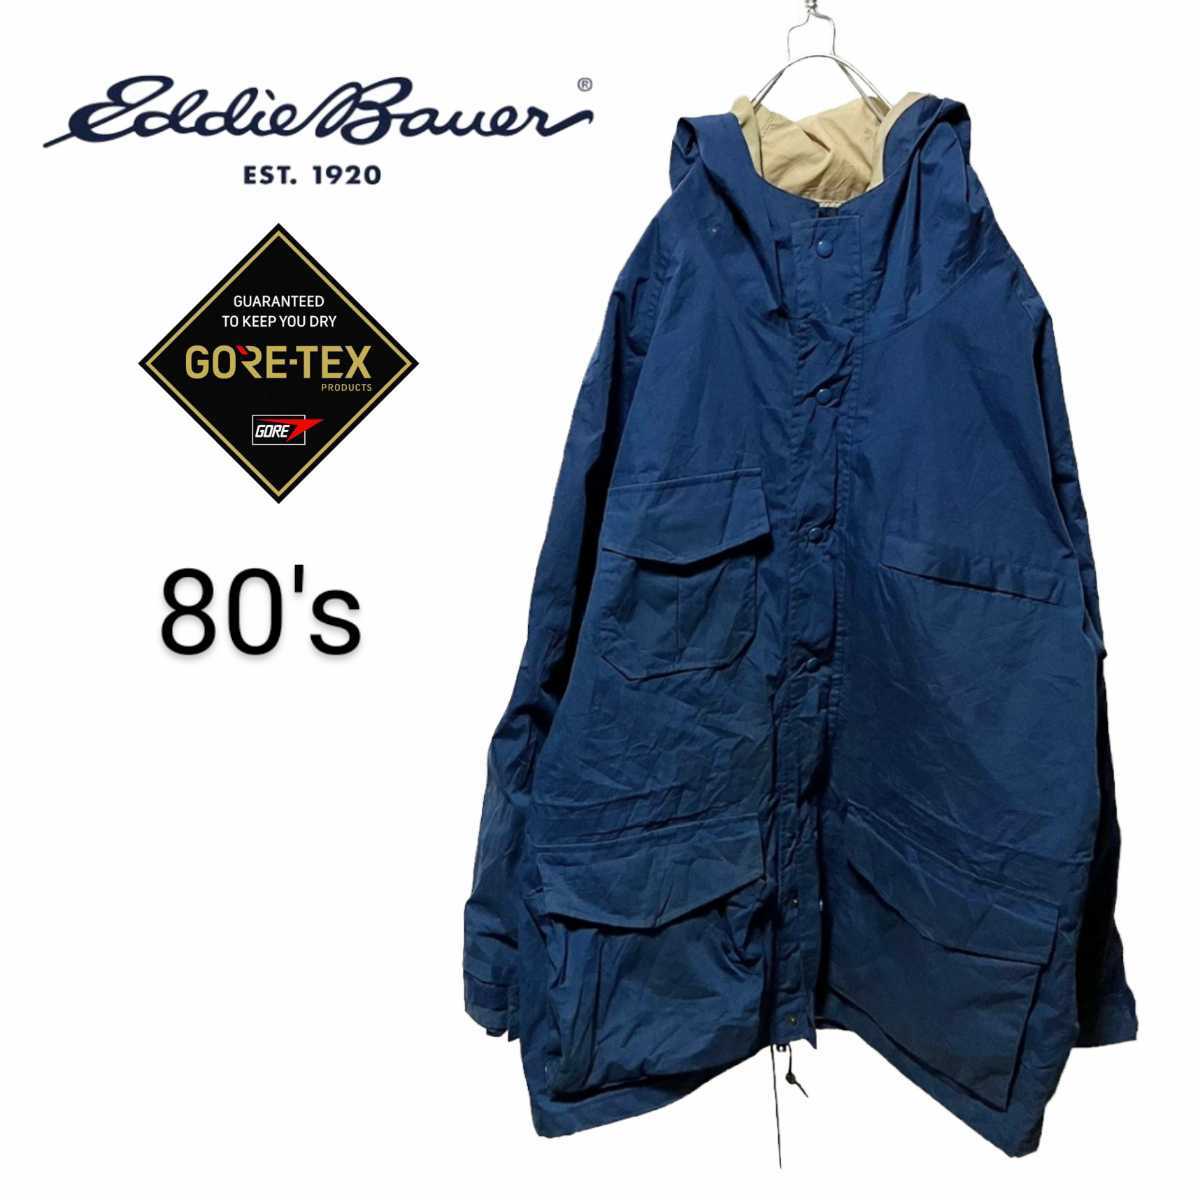 【Eddie Bauer】80's GORE-TEX マウンテンパーカー 251